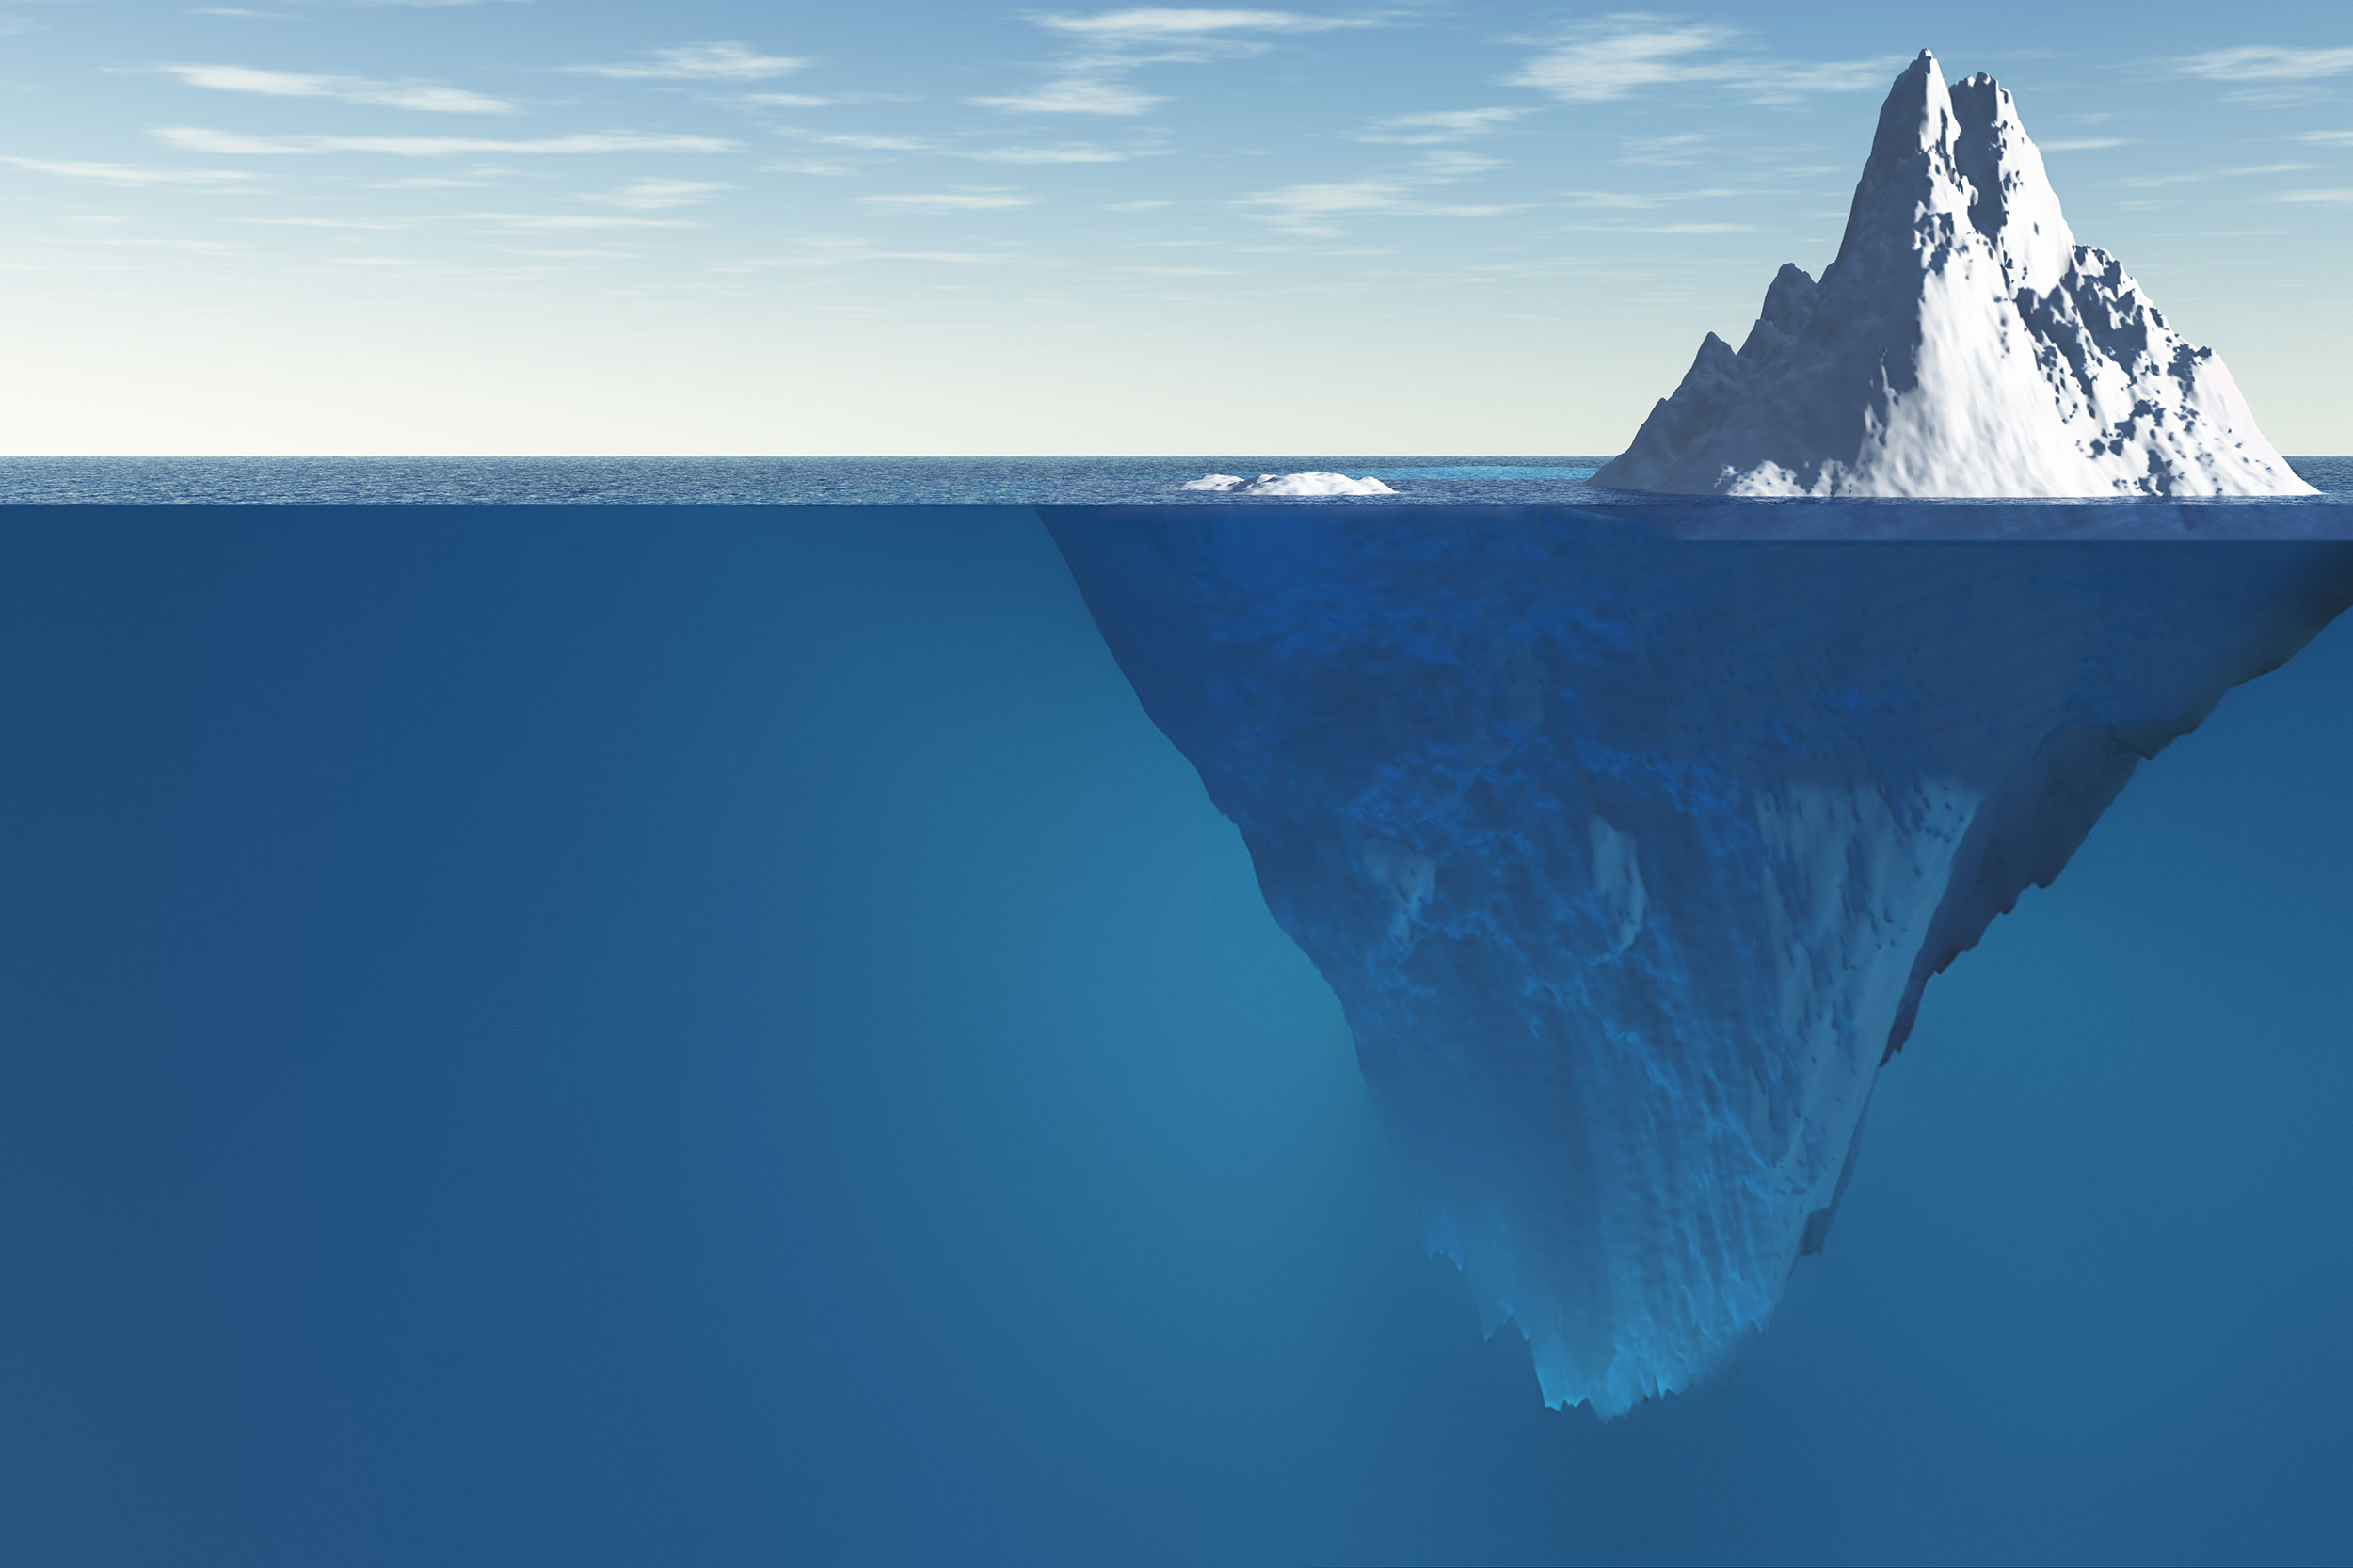 The Anger Iceberg